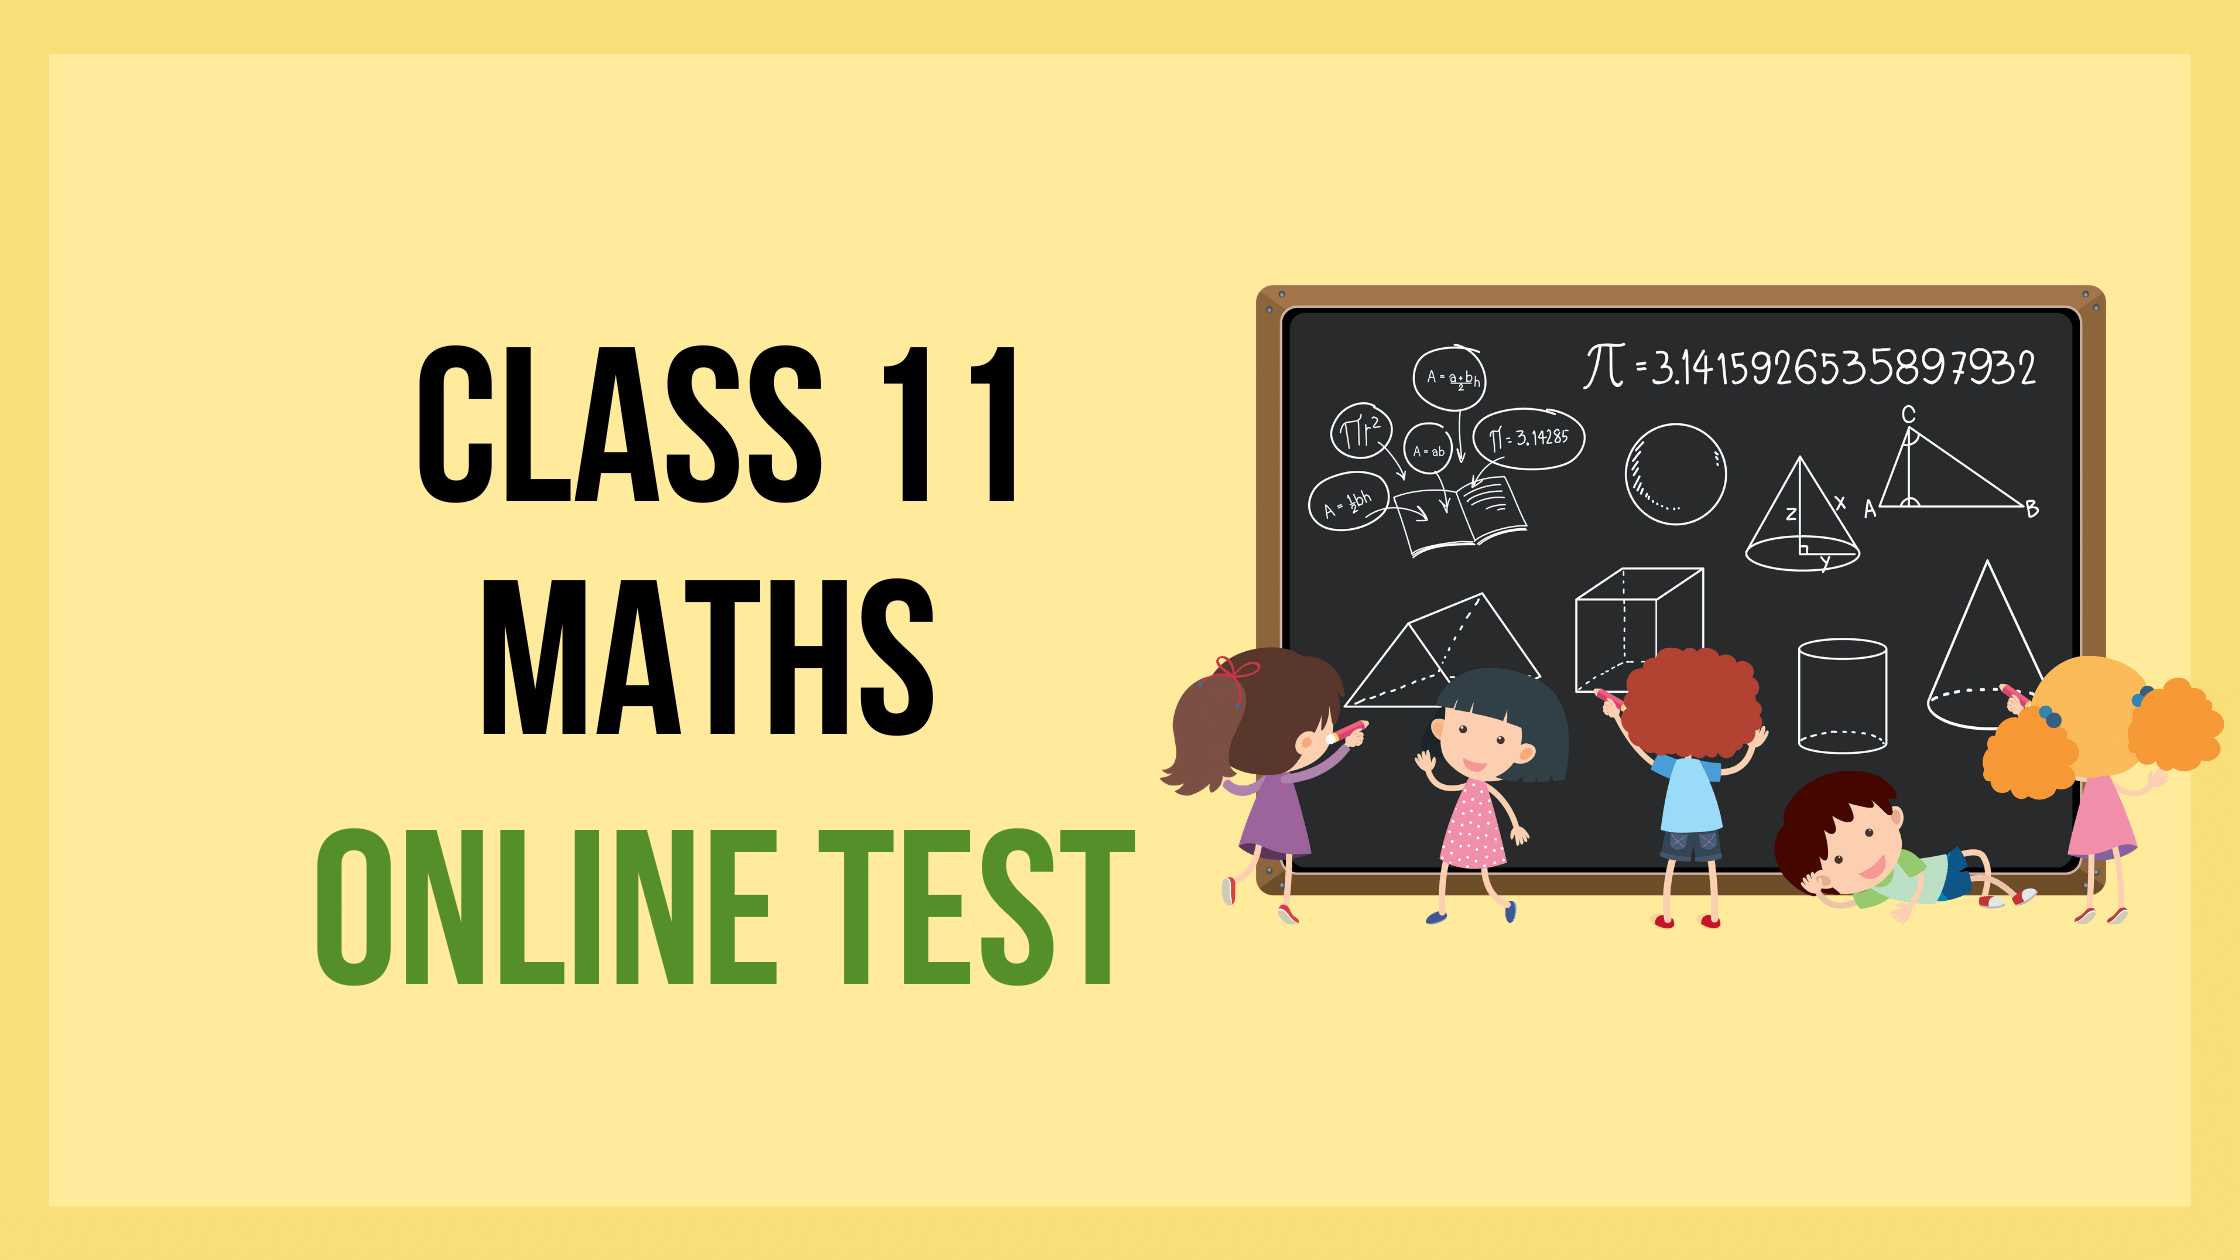 Online Test For Class 11 Maths